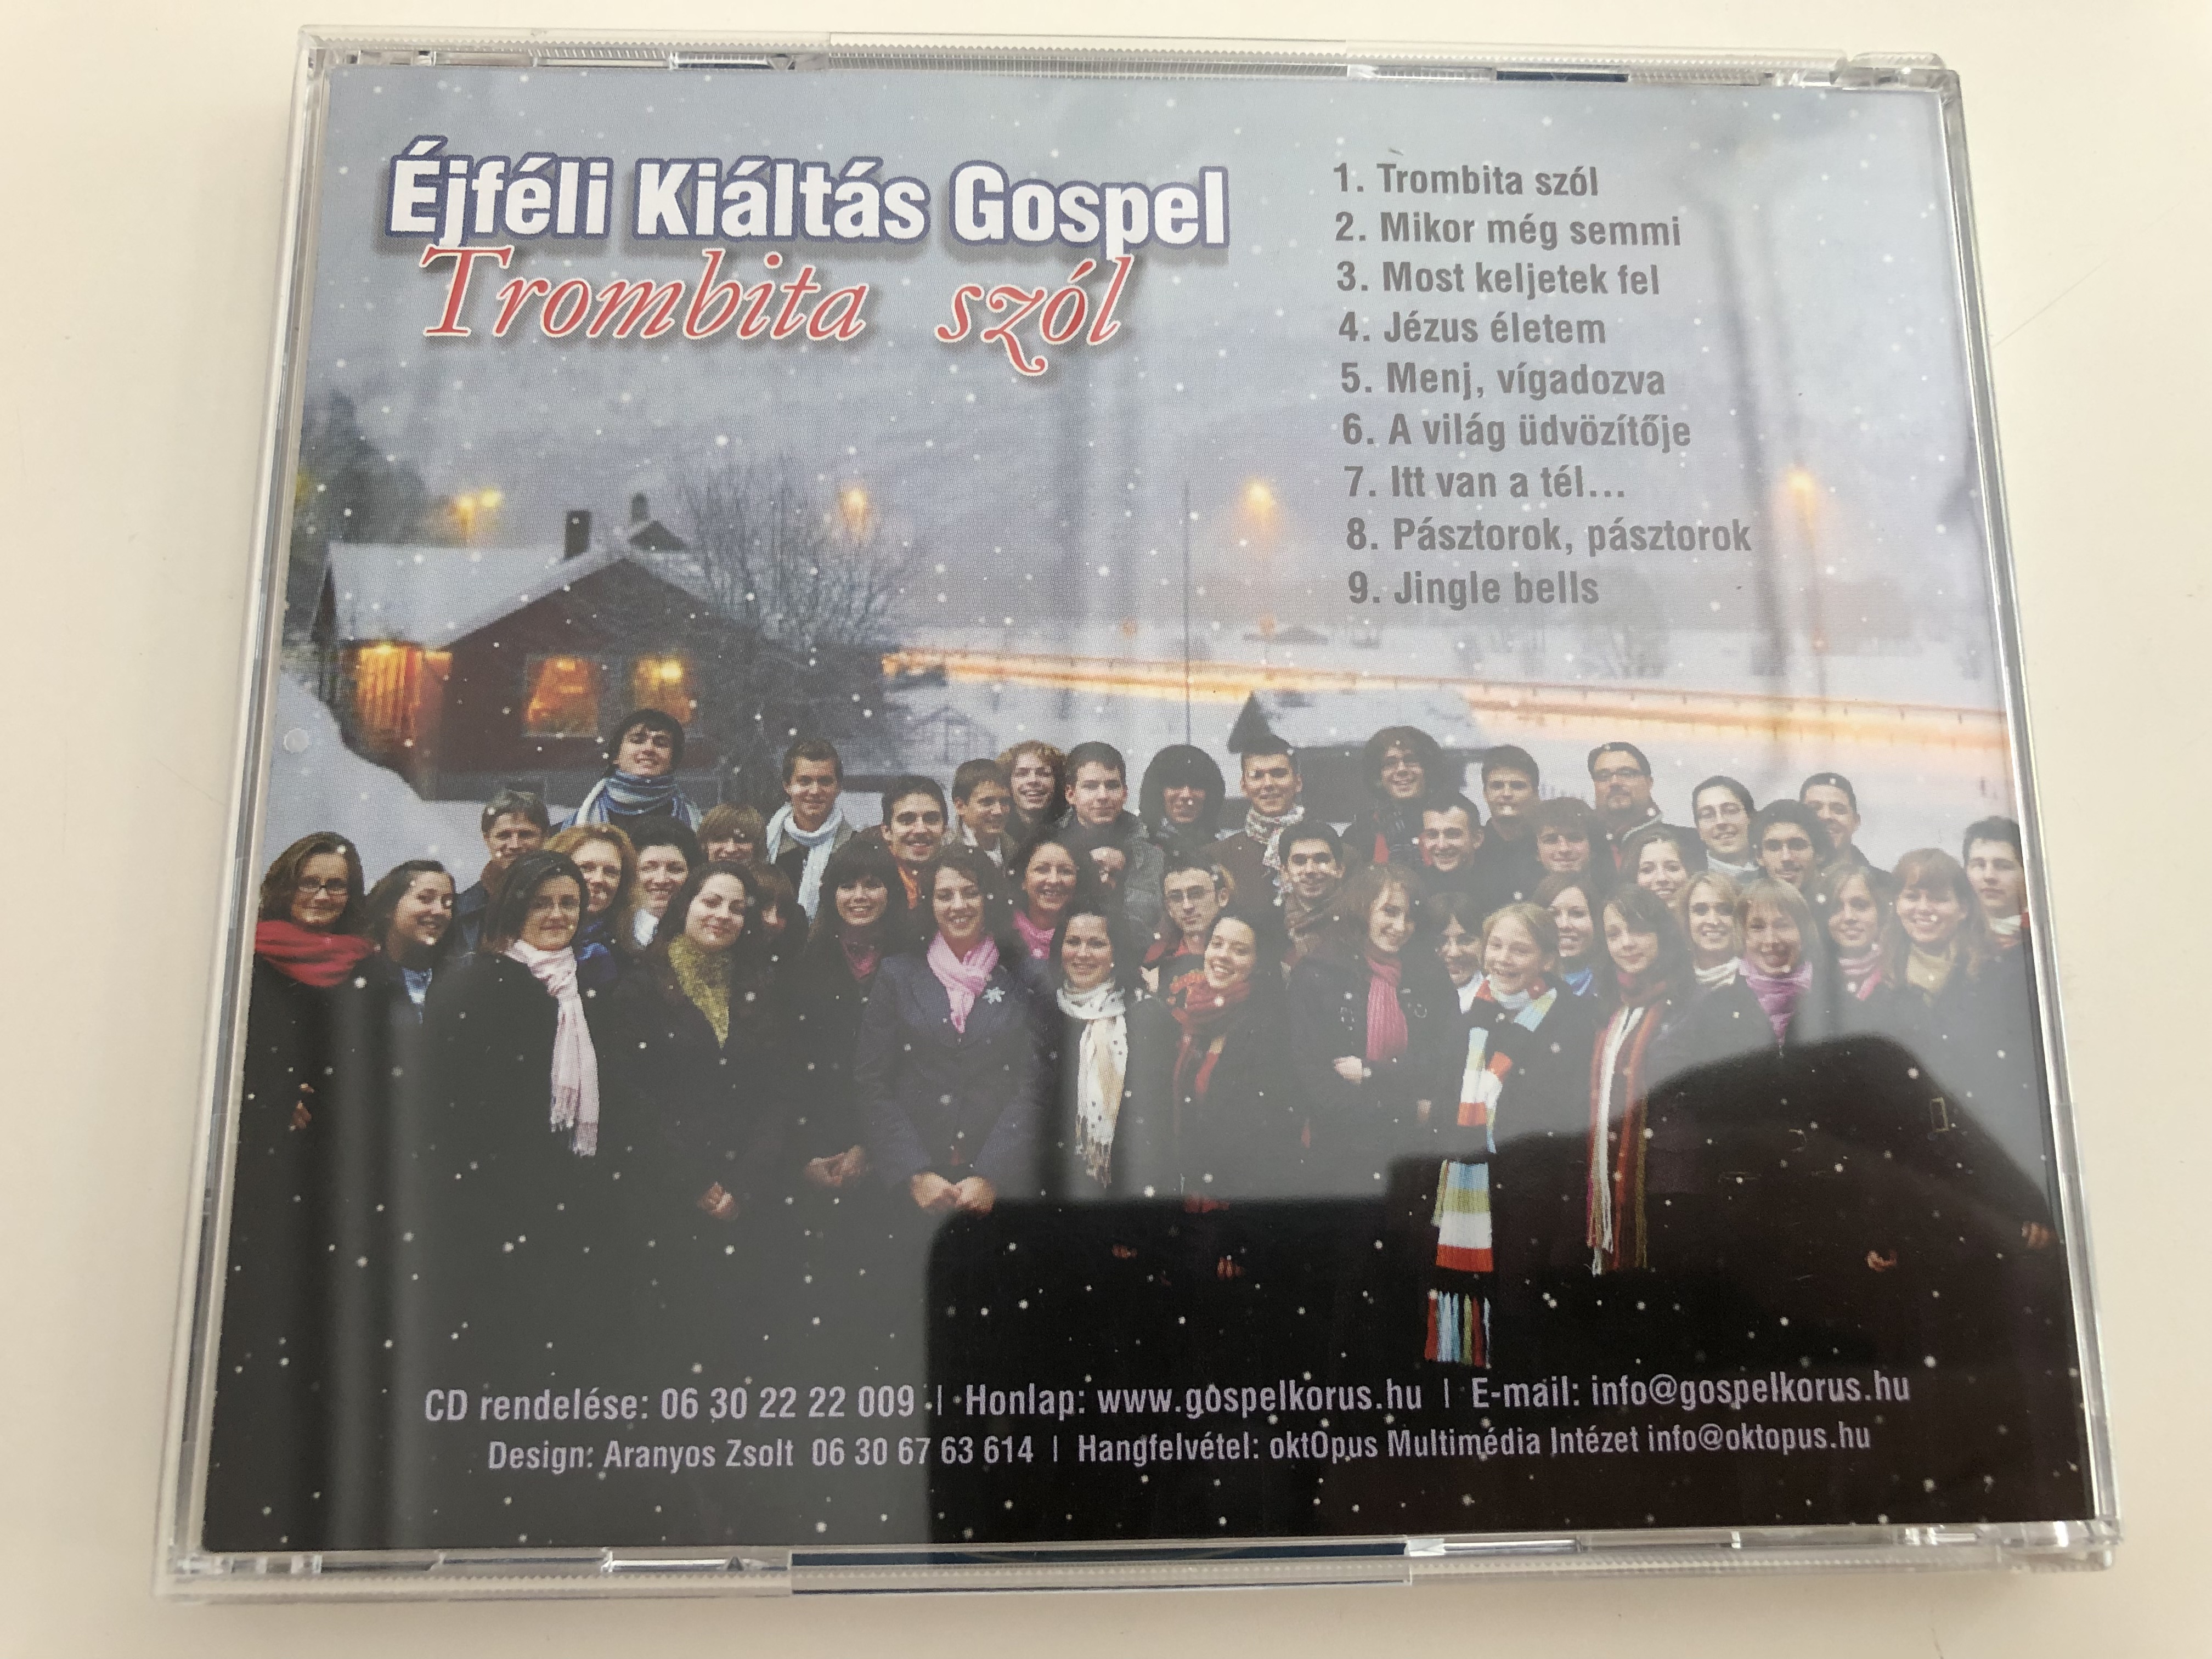 -jf-li-ki-lt-s-gospel-trombita-sz-l-audio-cd-kar-csonyi-gospel-christmas-songs-in-hungarian-7-.jpg